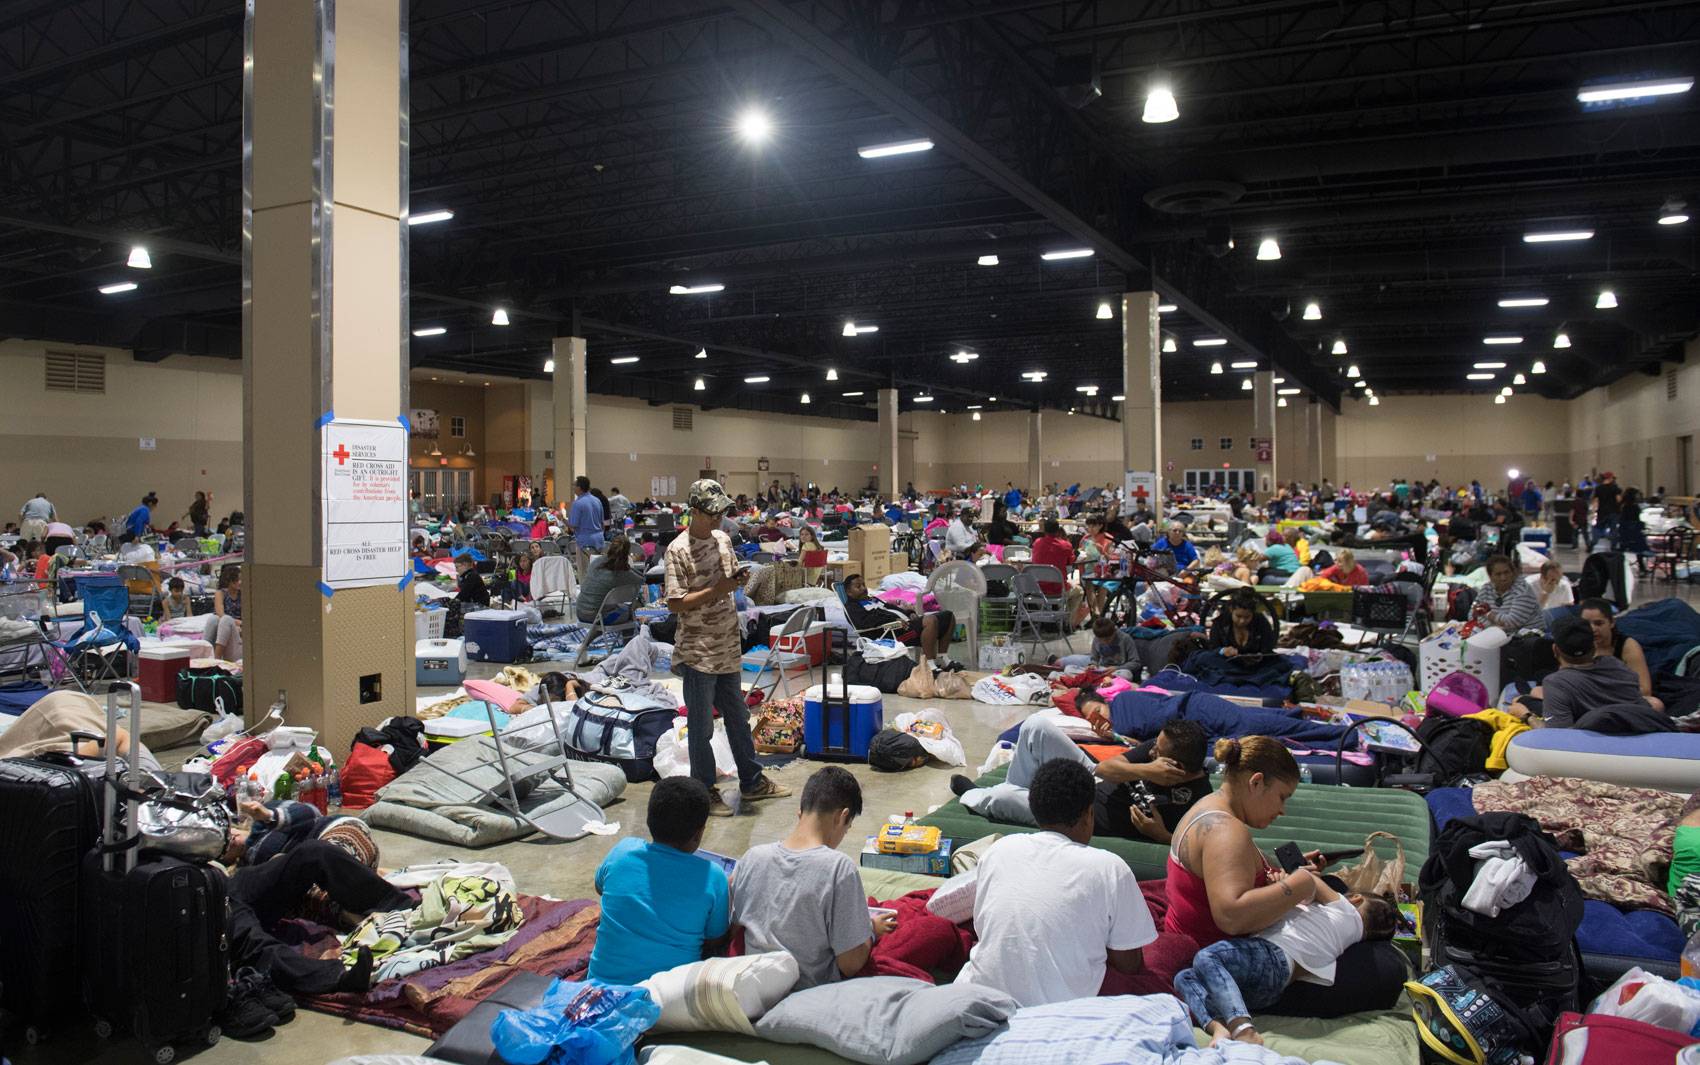  Centenas de pessoas buscam abrigo em um centro de convenções de Miami. Furacão Irma deve chegar à Flórida entre sábado e domingo